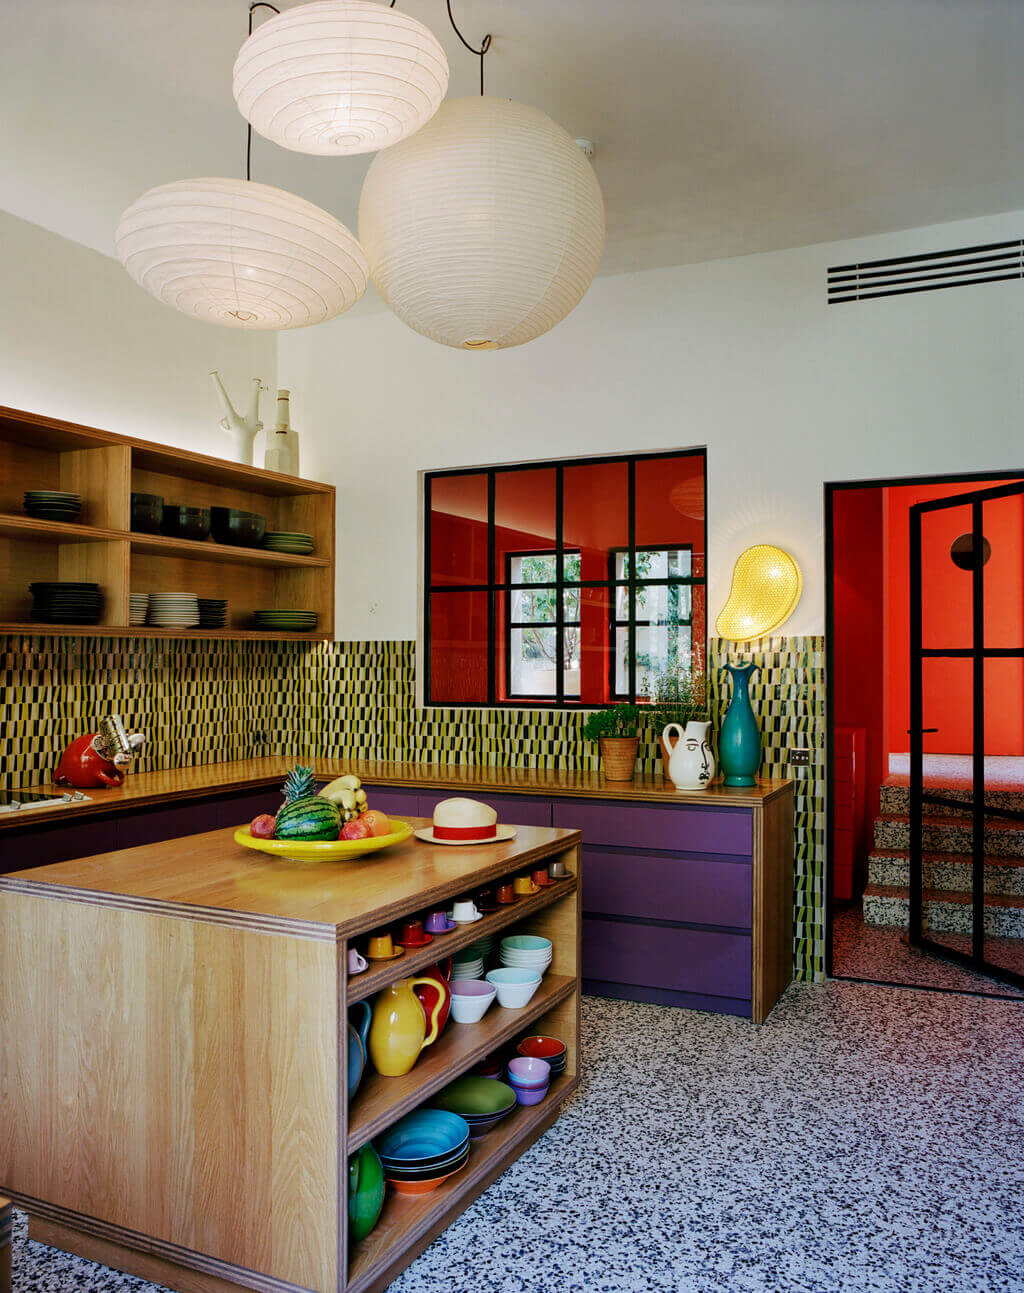 Kitchen Design Ideas From Top Interior Designers